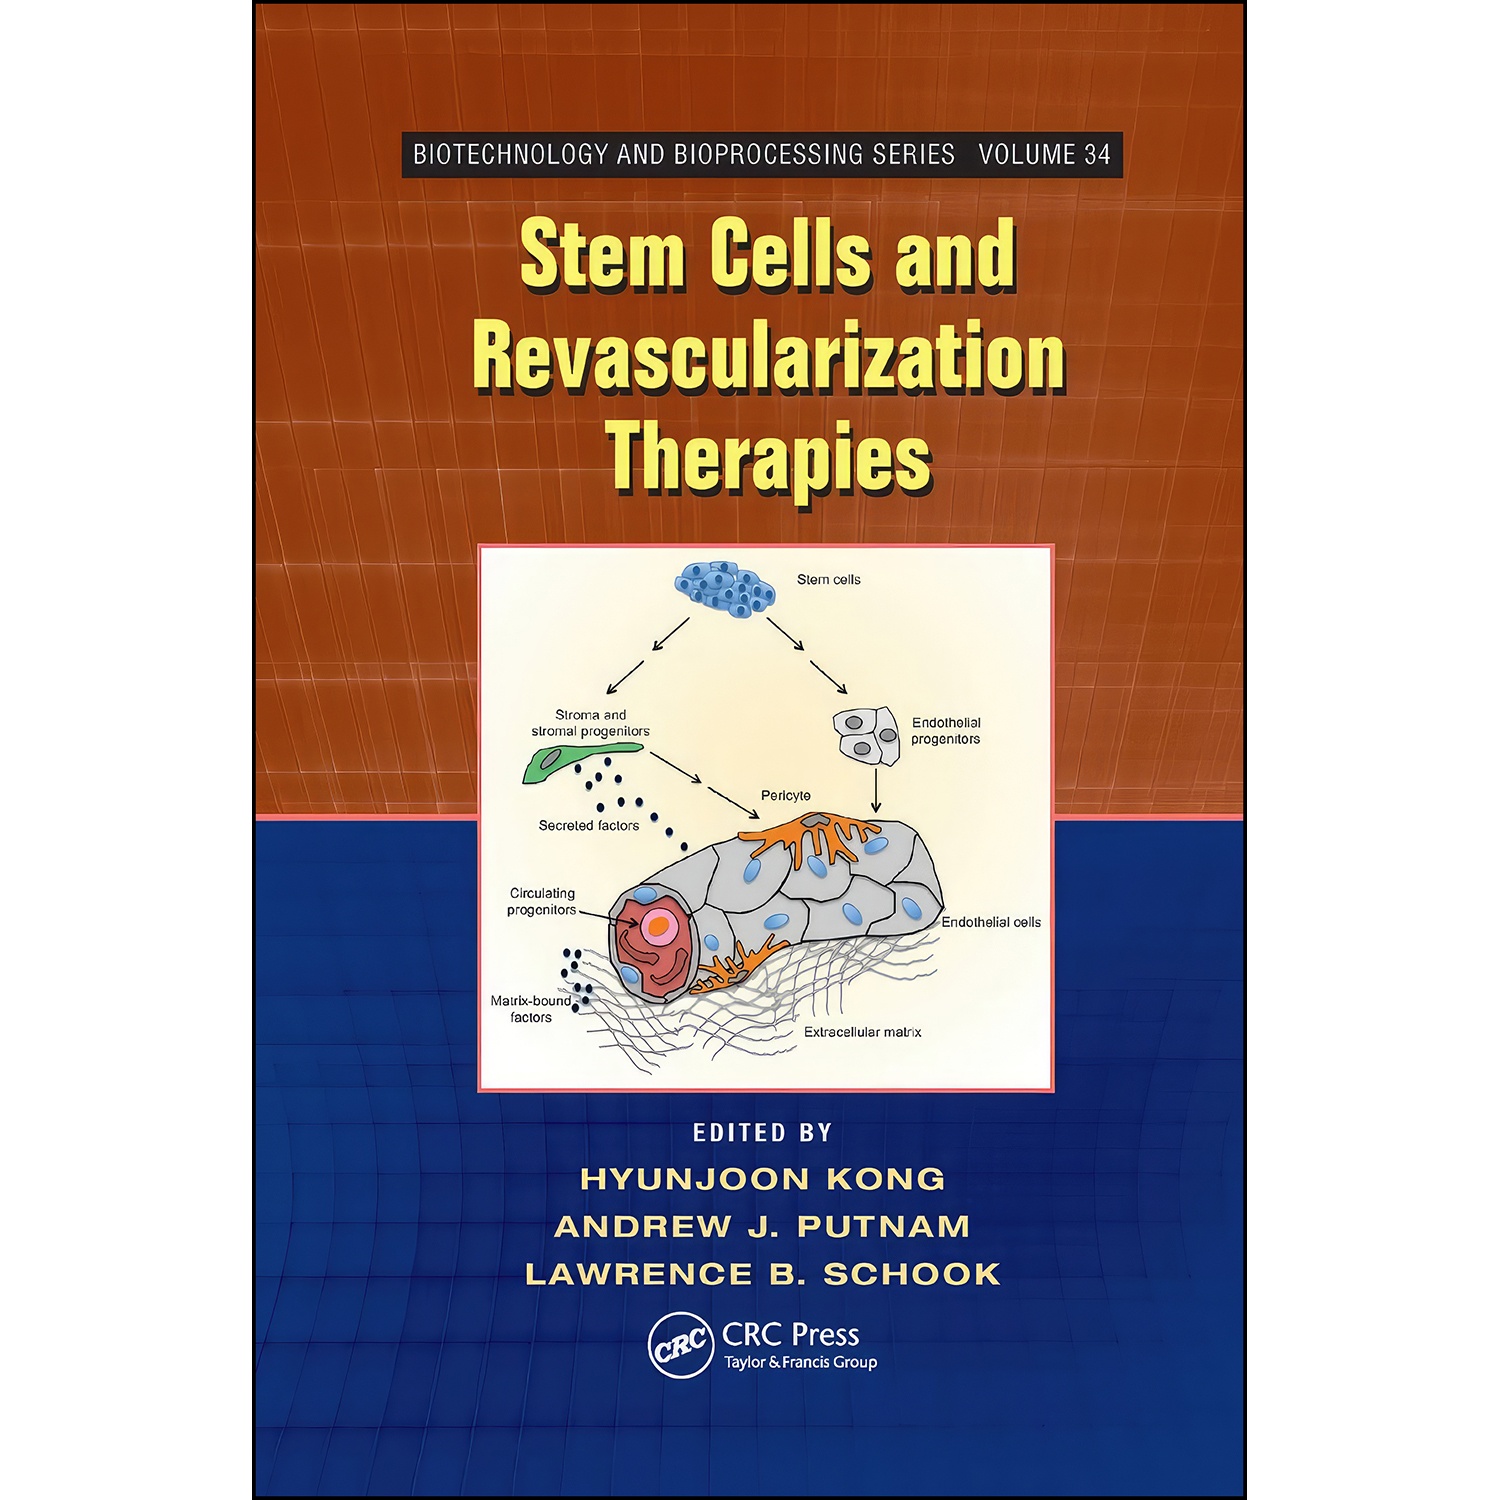 کتاب Stem Cells and Revascularization Therapies اثر جمعي از نويسندگان انتشارات CRC Press